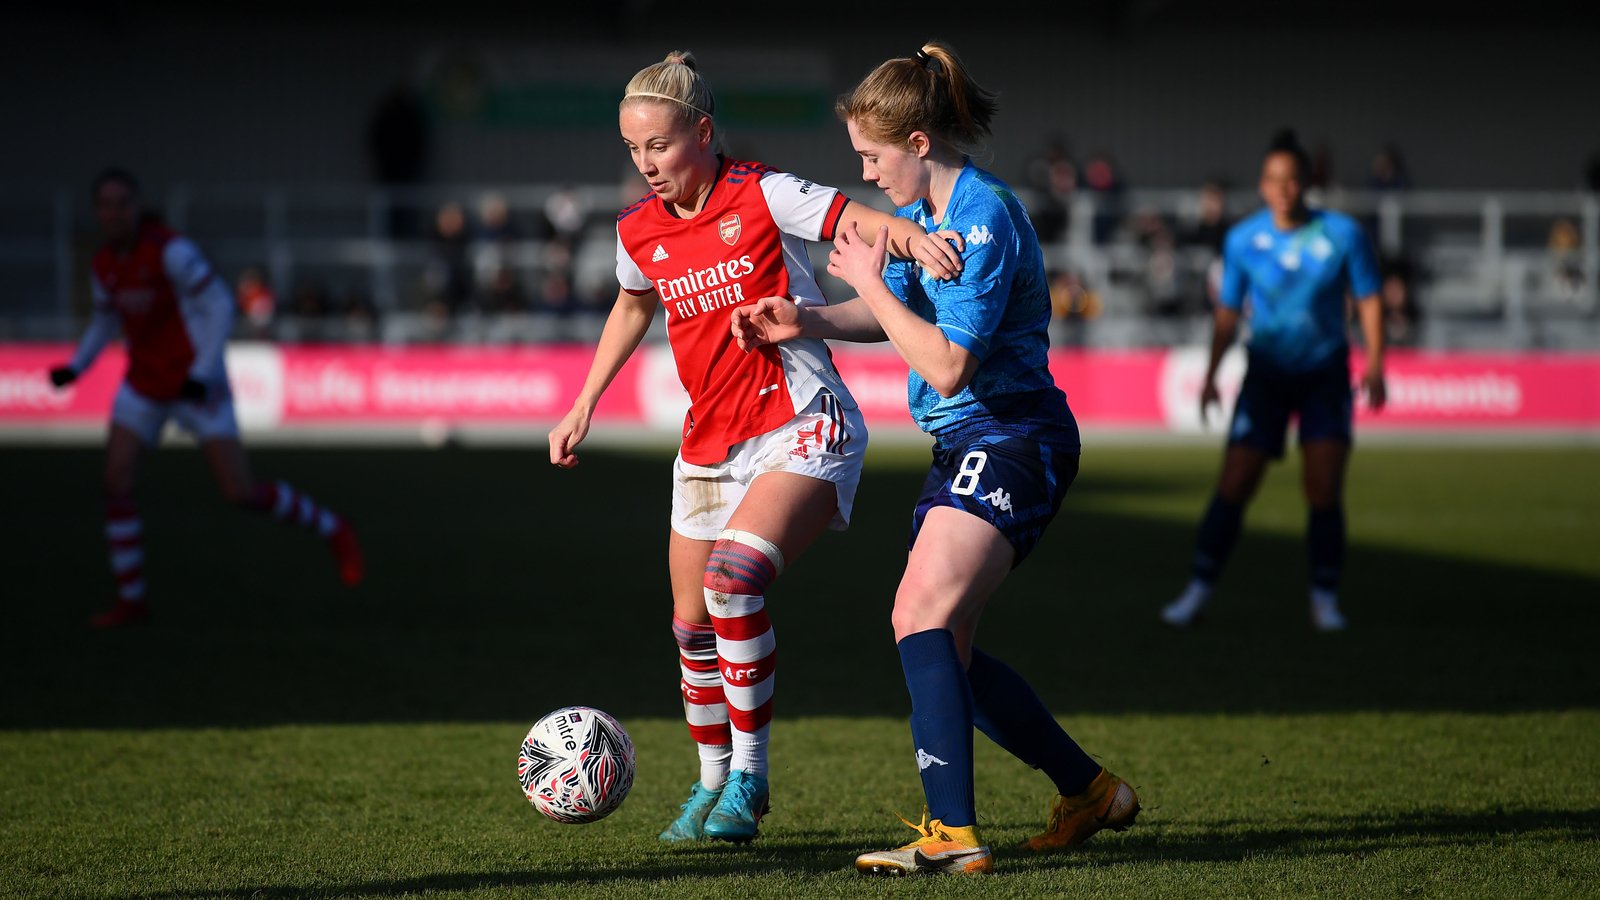  Match report: Arsenal Women 1-0 London City